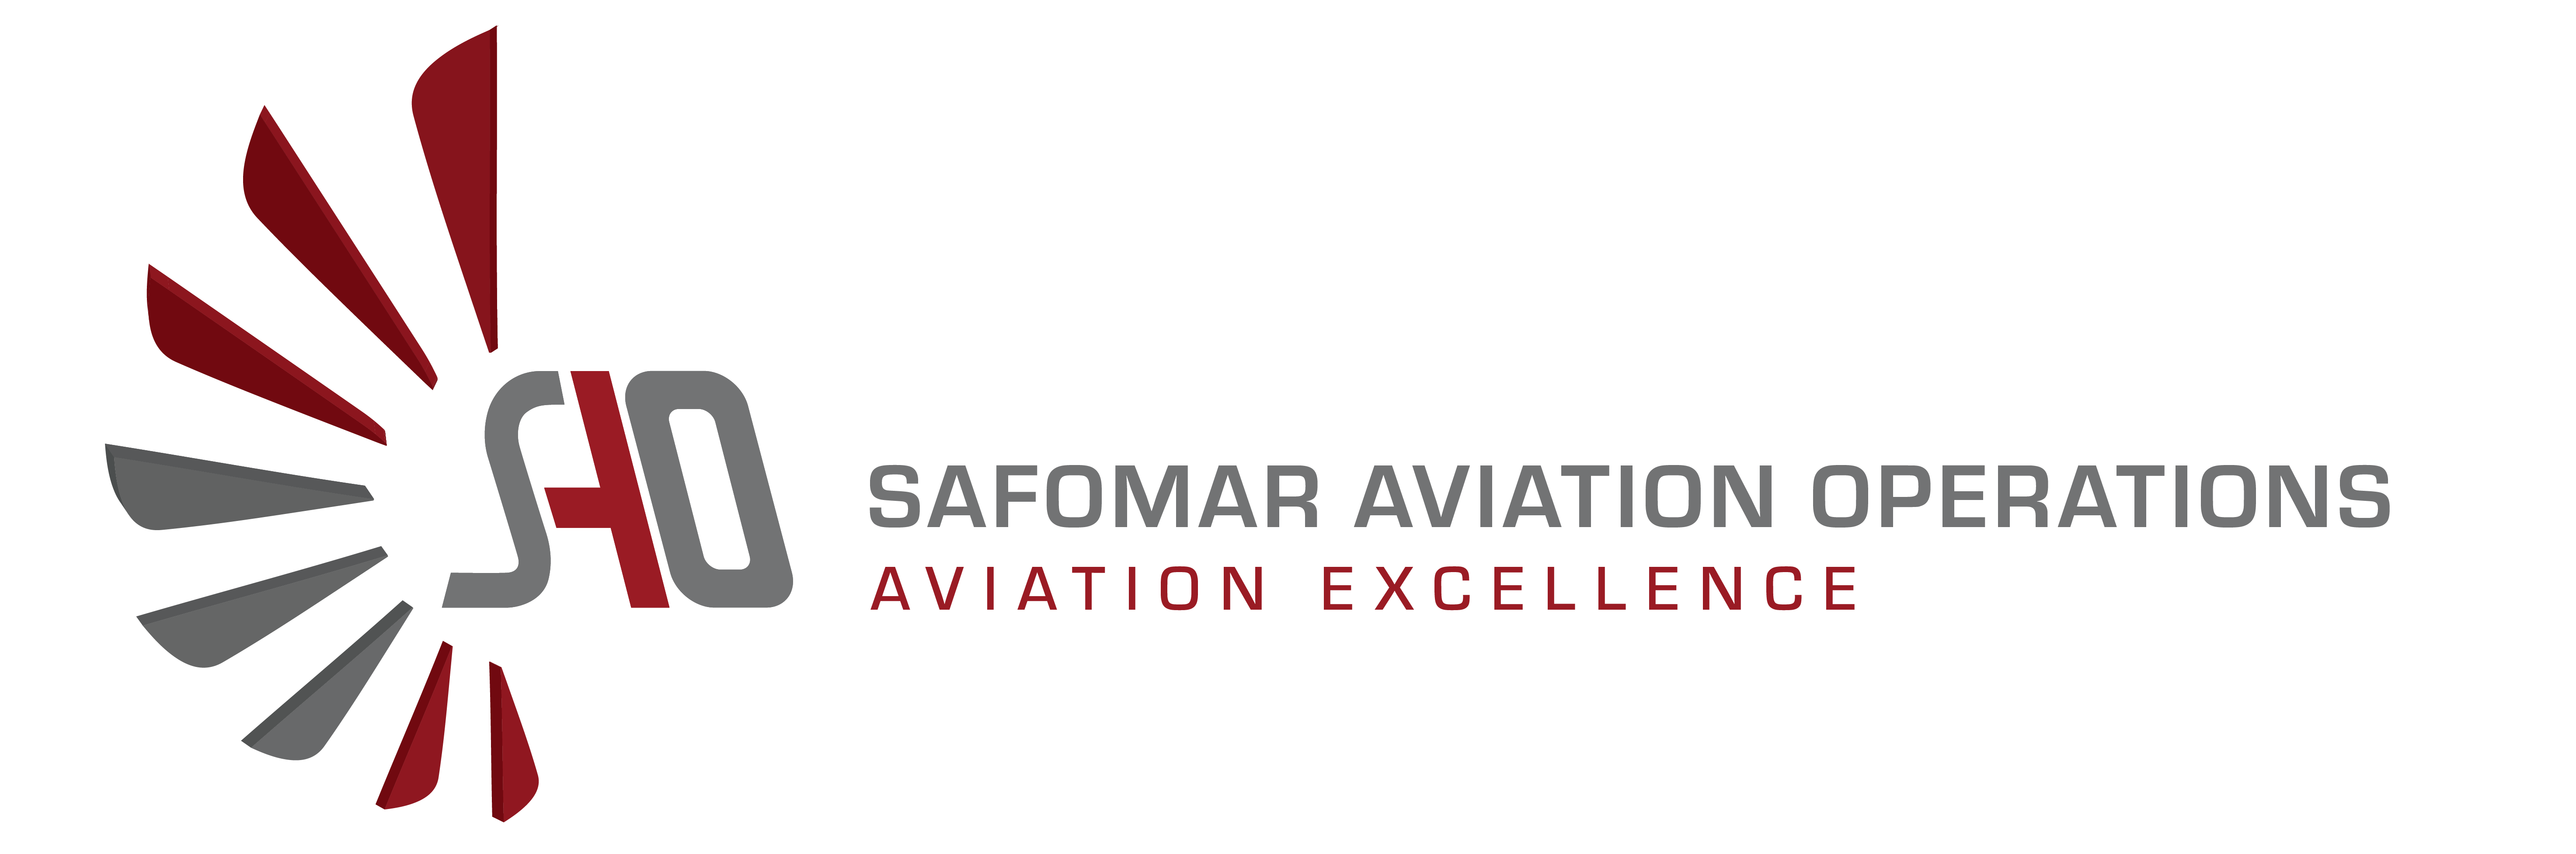 safomar-aviation-ppl-banner